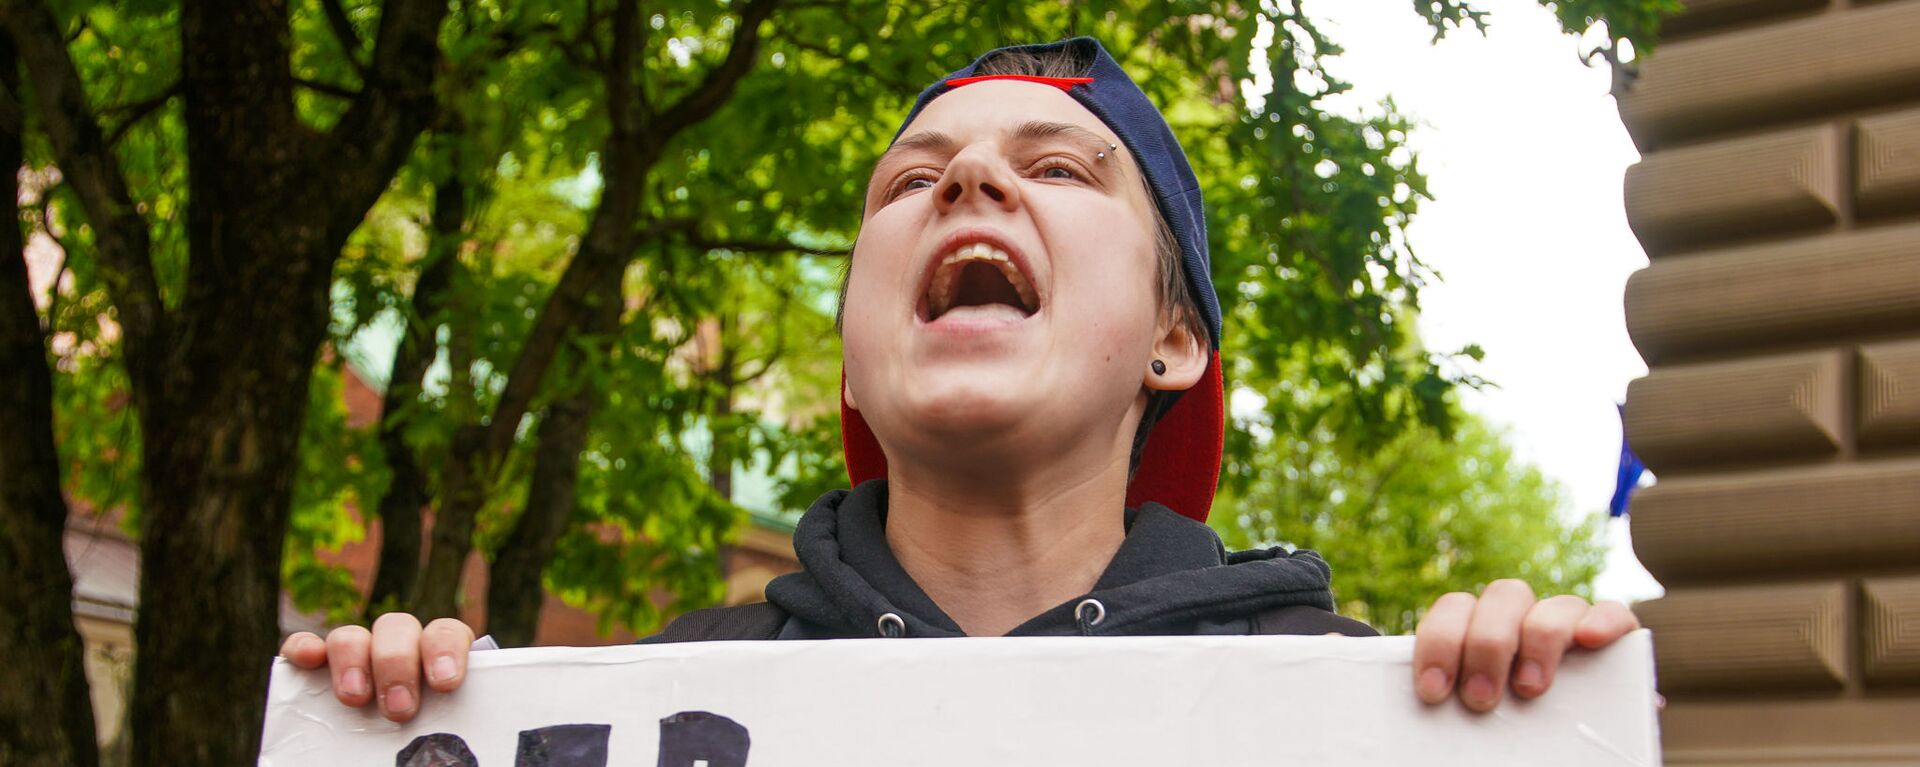  Пикет молодежной организации Протест за права представителей ЛГБТ - Sputnik Латвия, 1920, 18.05.2021